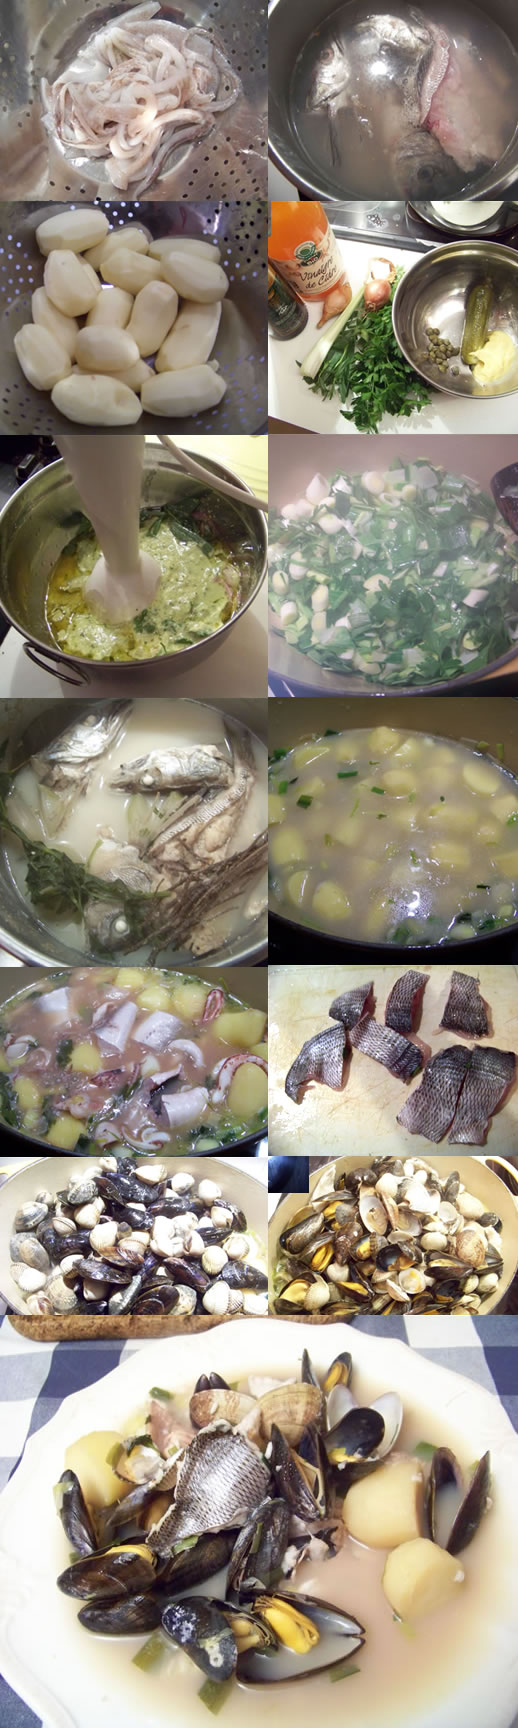 recette de la cotriade, soupe bretonne de poisson et fruits de mer